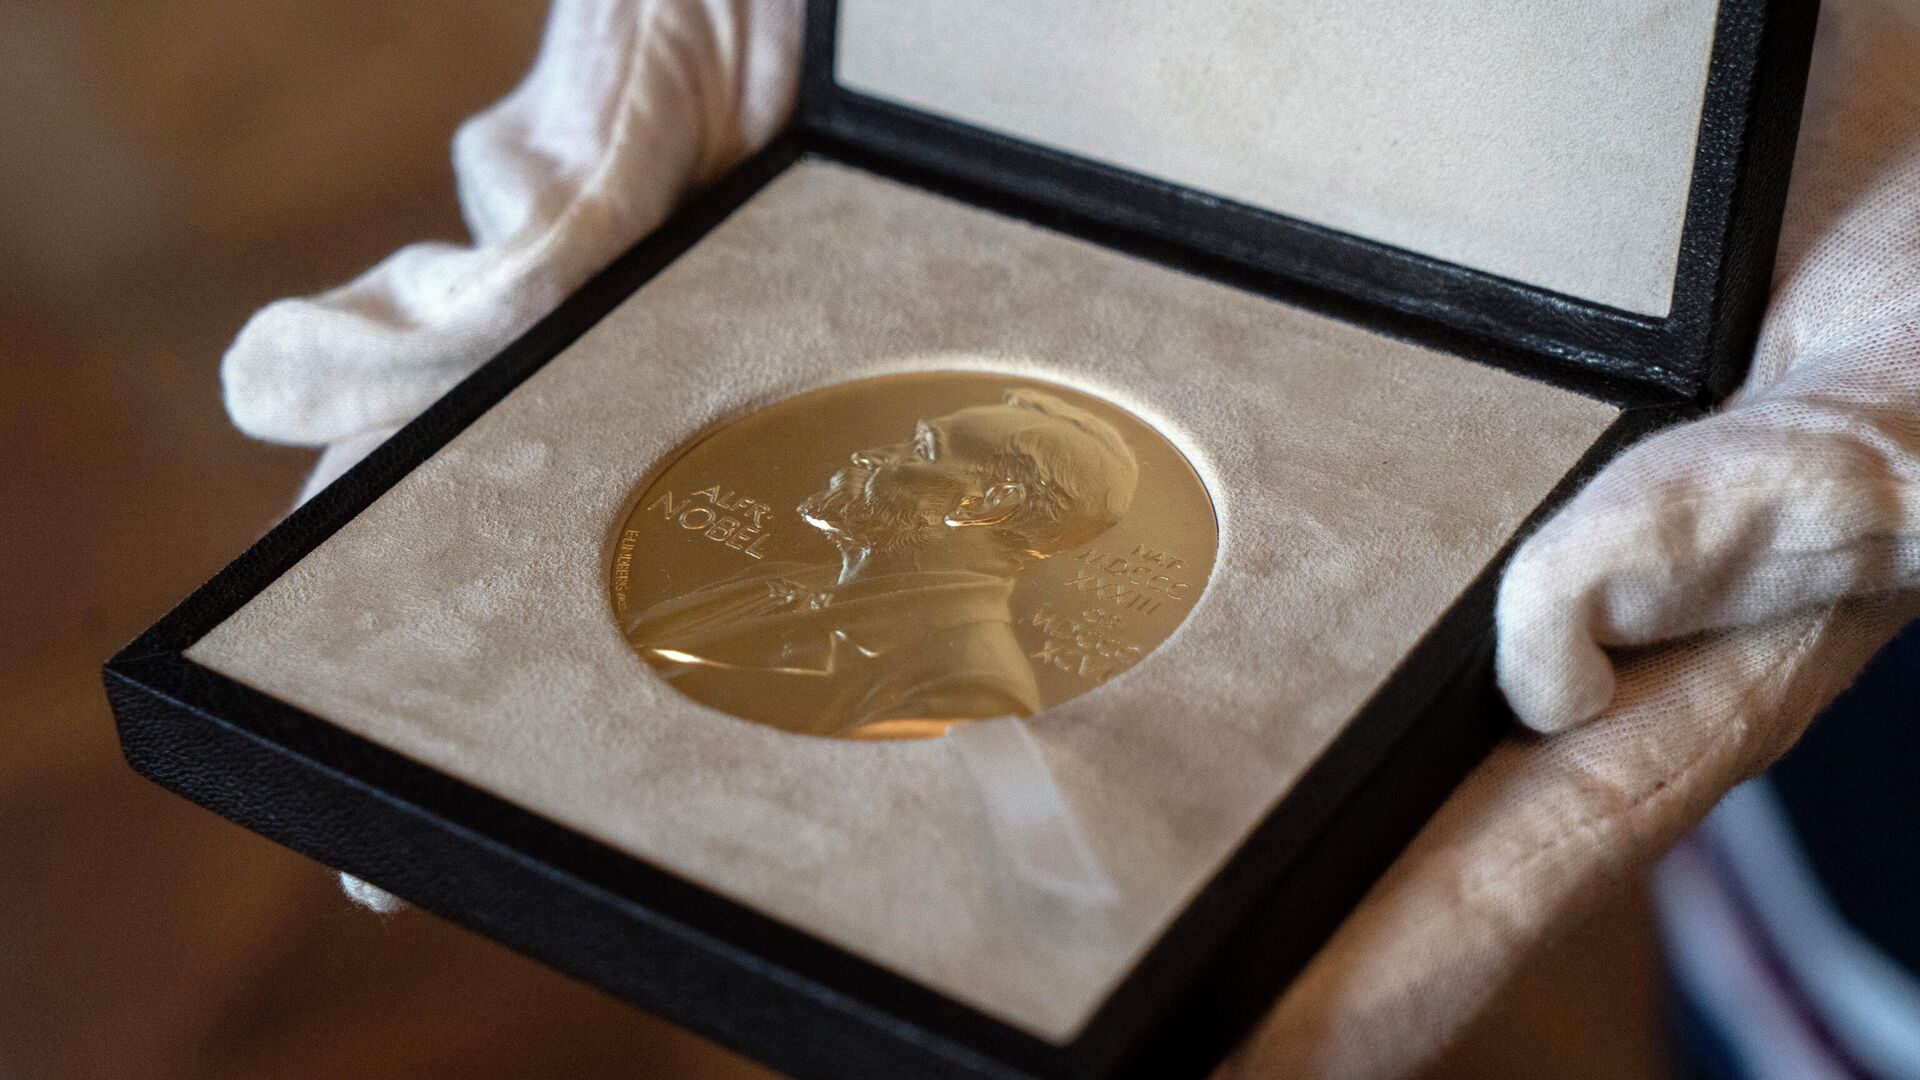 Медаль Нобелевской премии, фото из архива - Sputnik Азербайджан, 1920, 06.10.2021